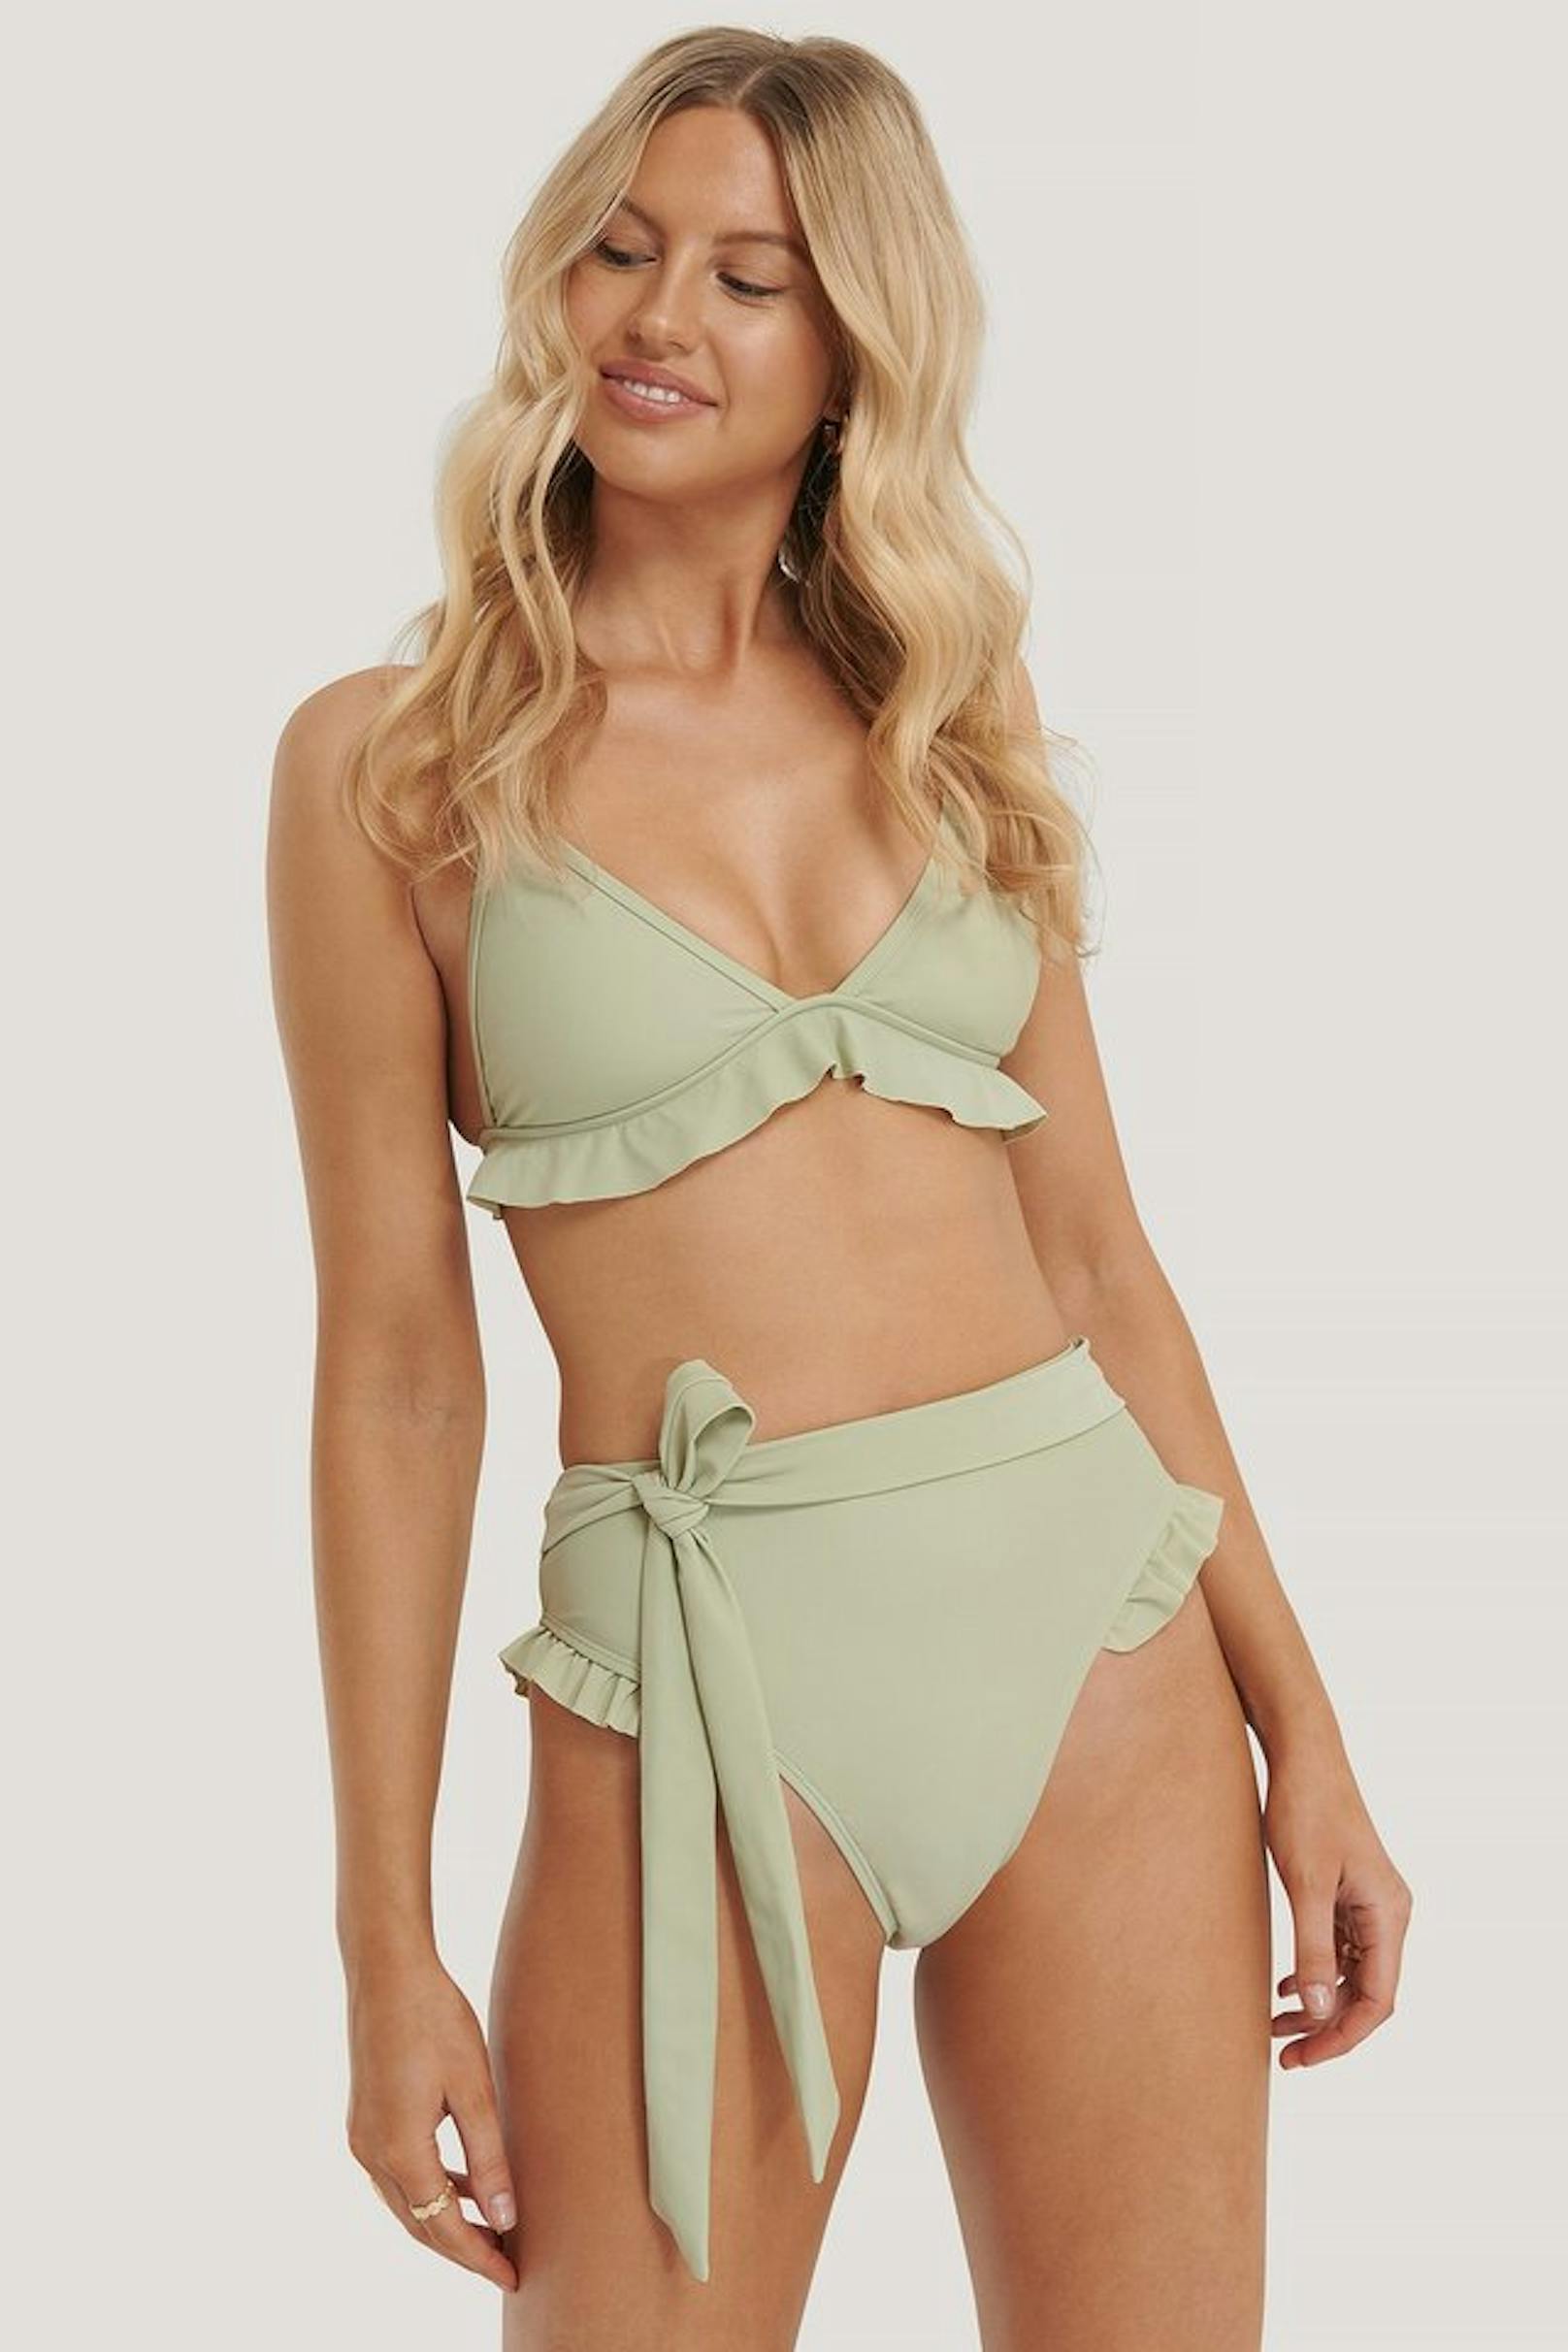 Pistaziengrüner Bikini mit Volants von <a href="https://www.na-kd.com/de/bademode/bikinis/bikini-unterteile/bikiniunterteil-mit-hoher-taille/bikini-hoschen-mit-hoher-taille-grun">Na-kd</a>, um 34 Euro.